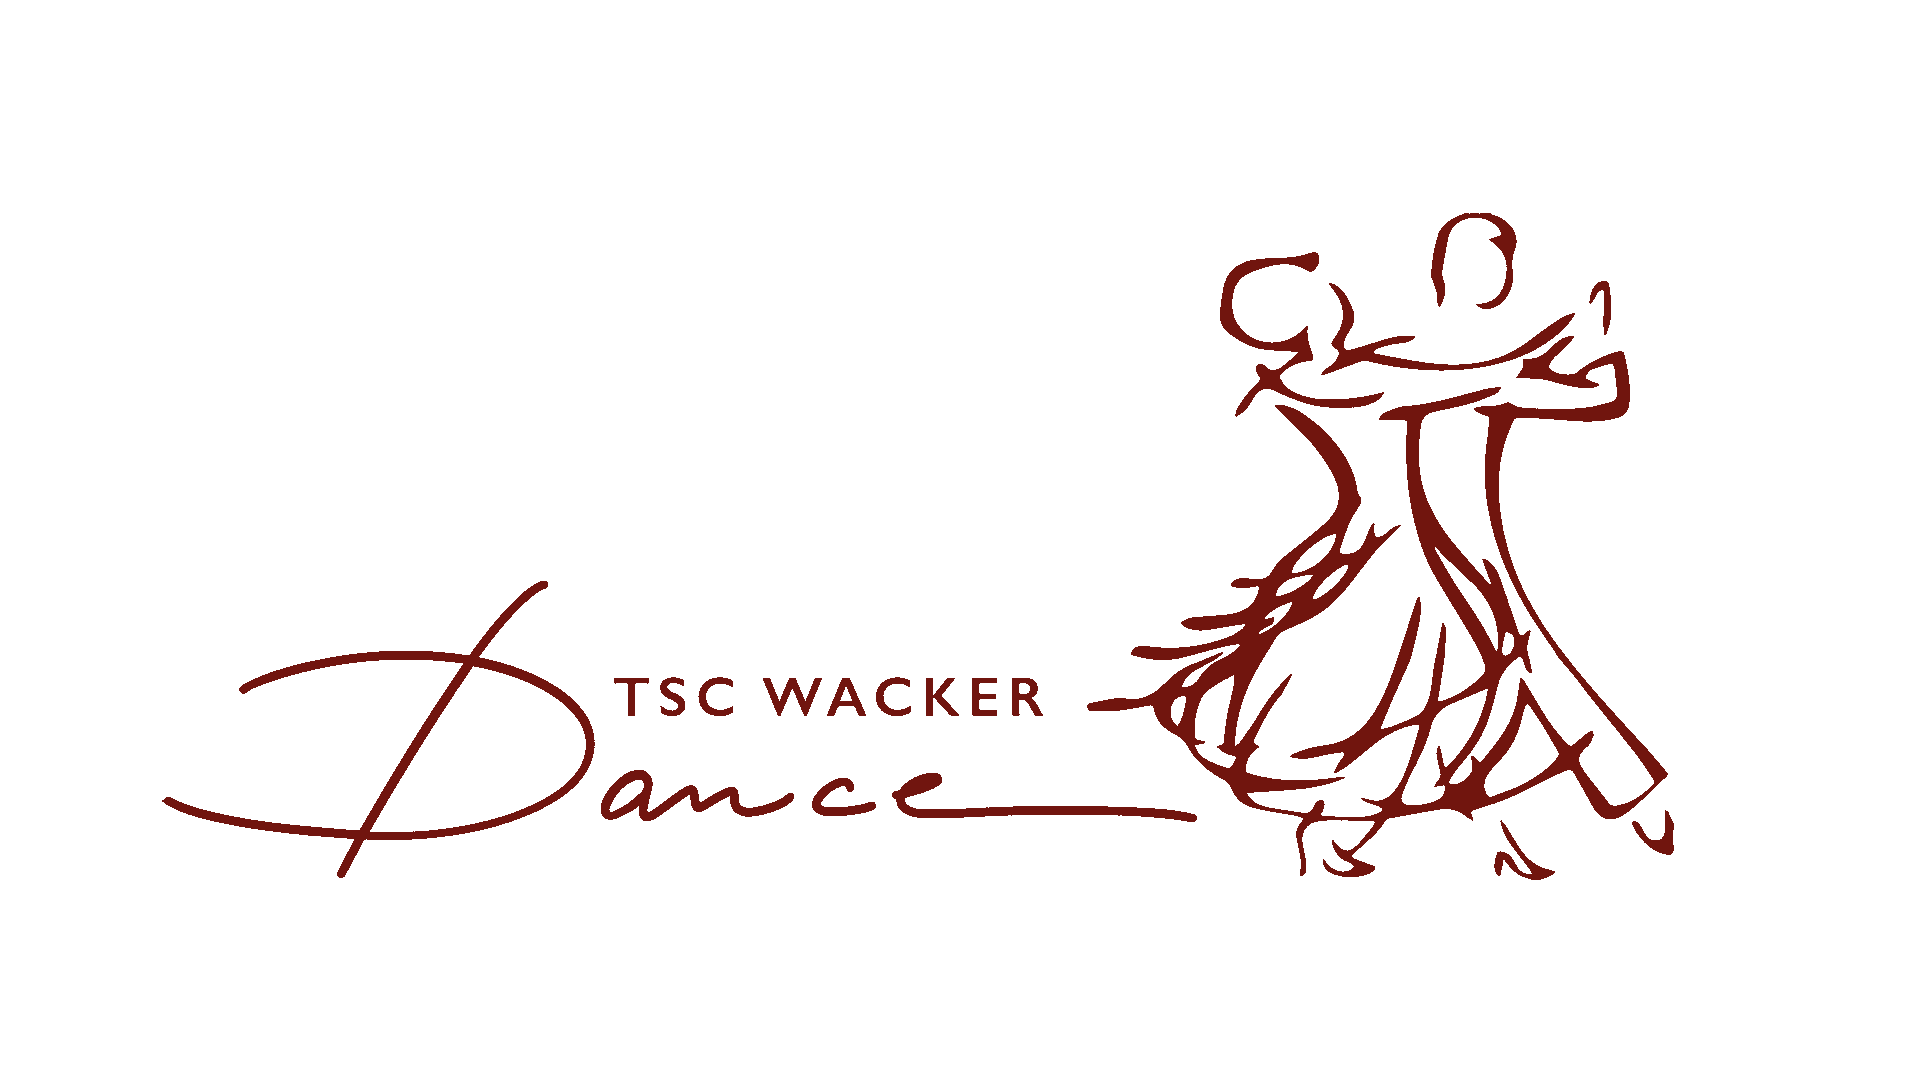 TSC Wackerdance Motzen e. V.